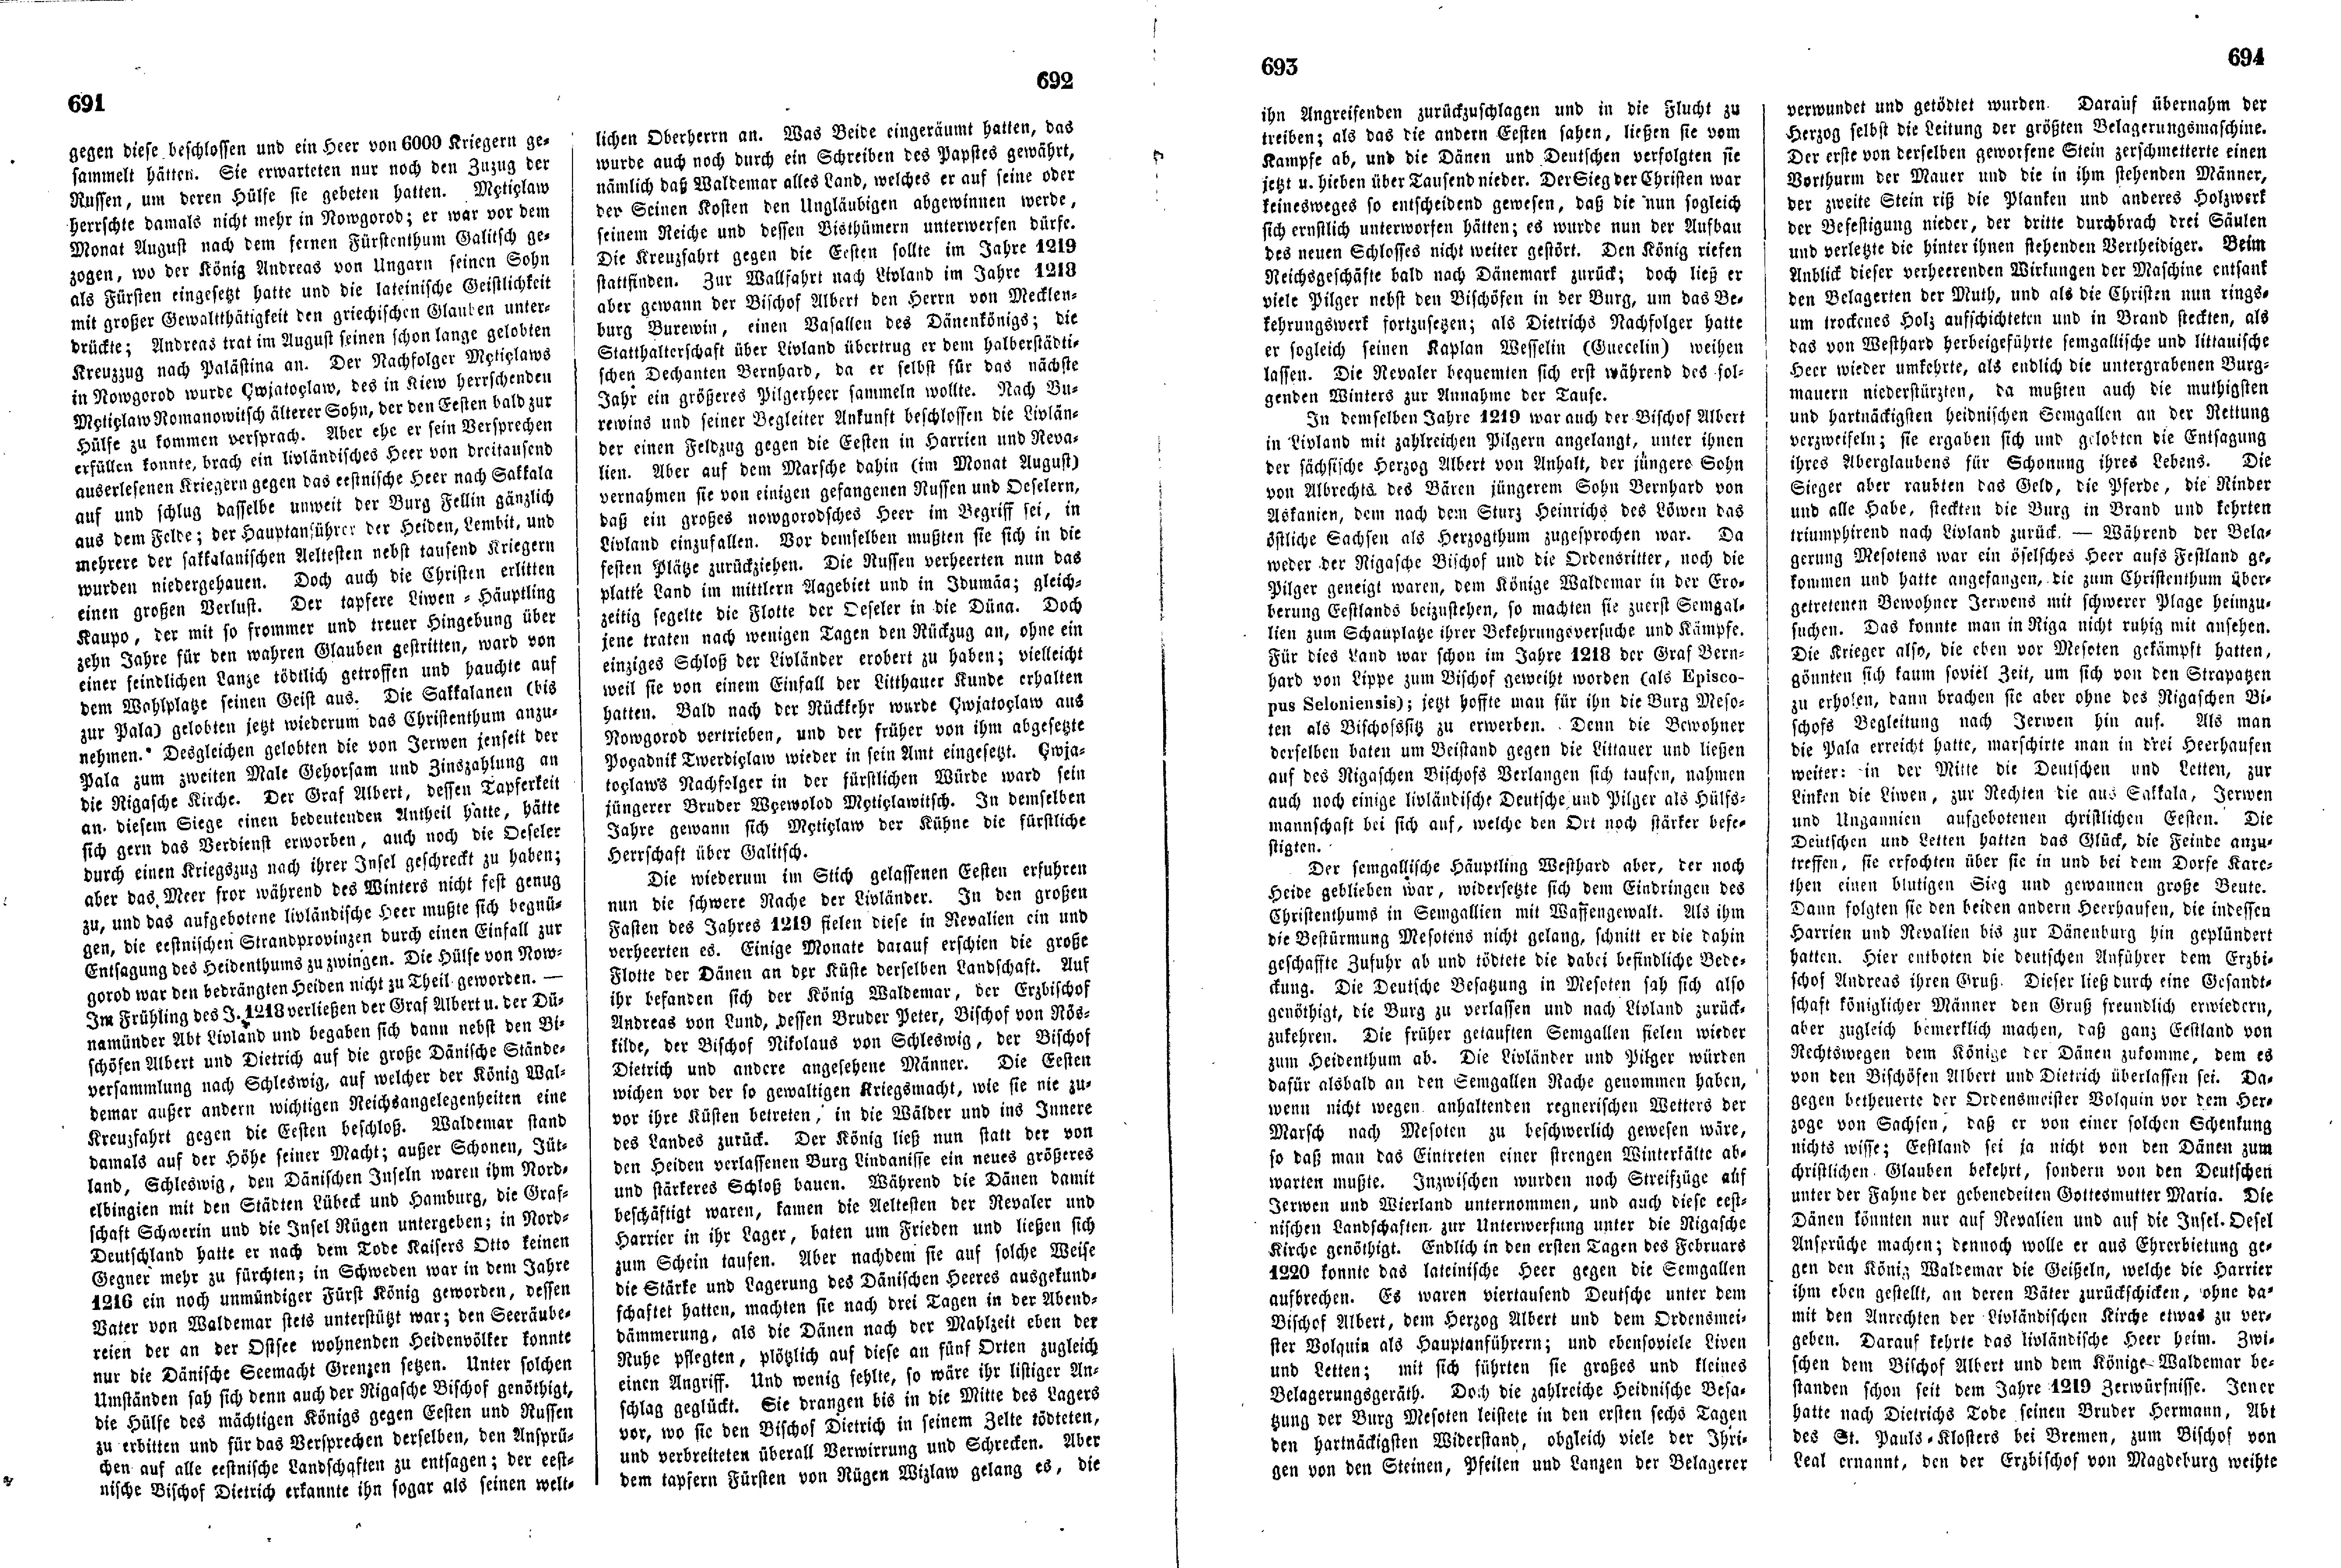 Das Inland [18] (1853) | 183. (691-694) Põhitekst